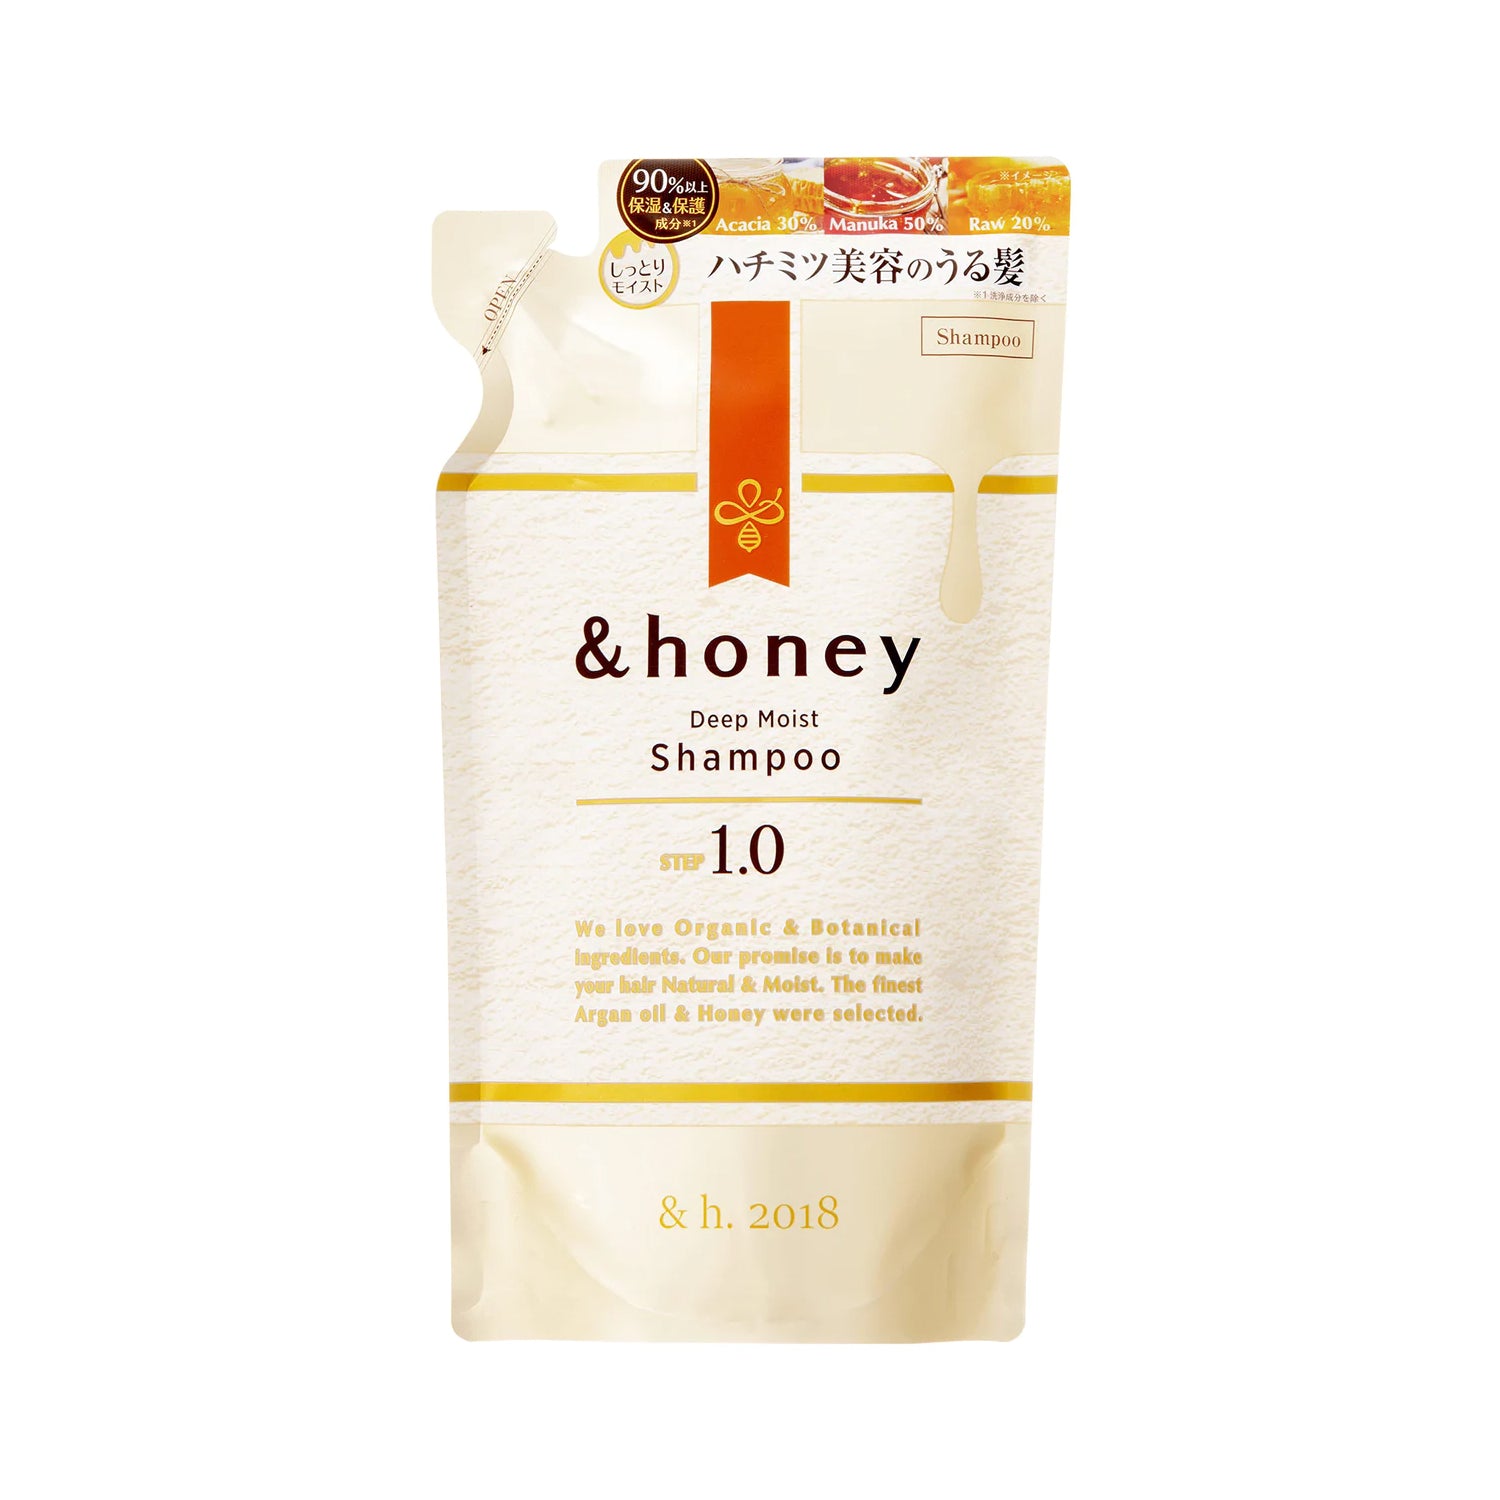 &honey Deep Moist Shampoo 1.0 Peony Honey